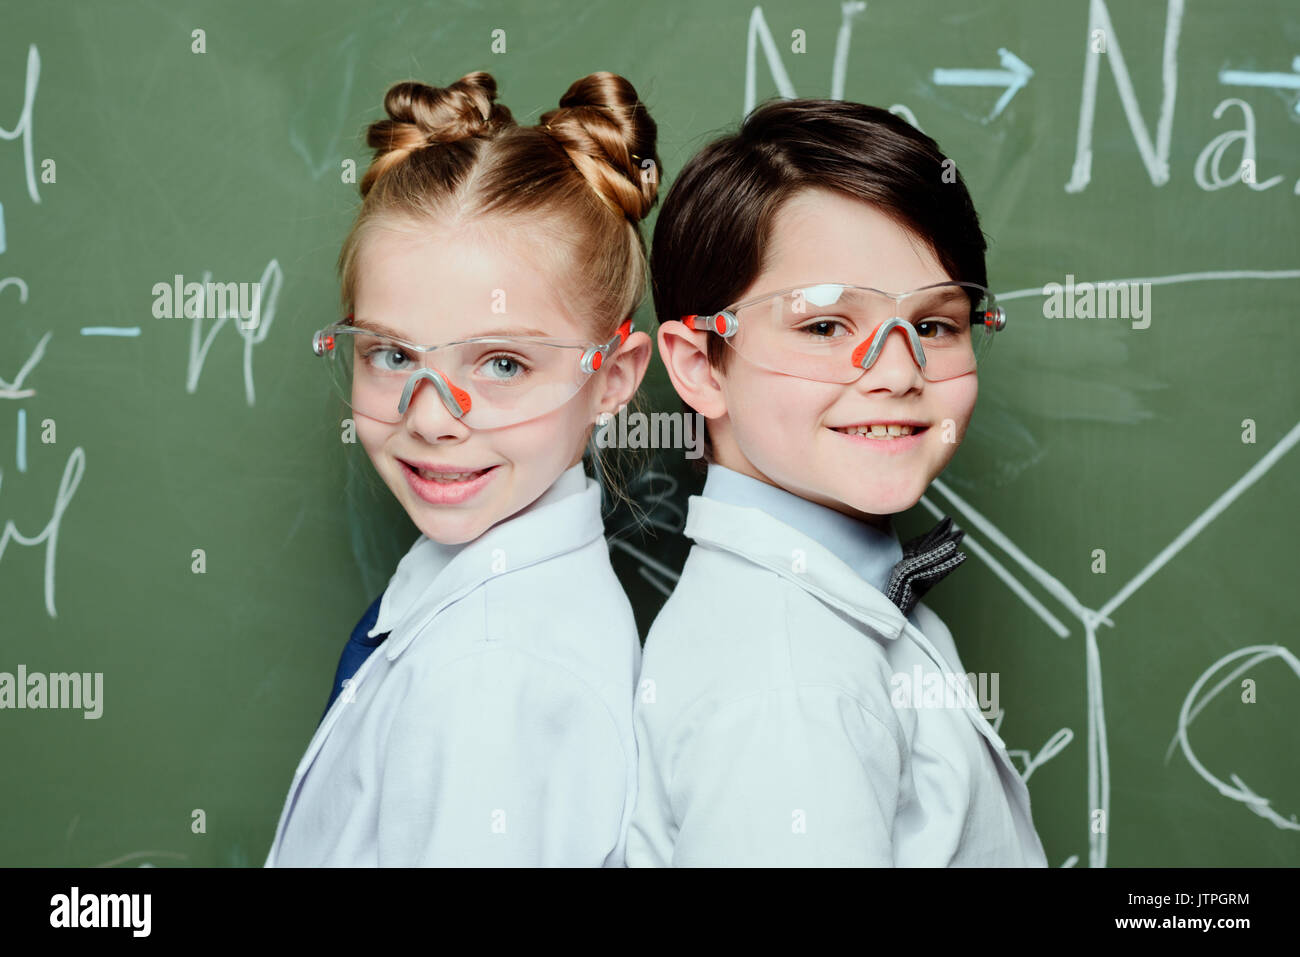 Jungen und Mädchen im weißen Kittel und Schutzbrille zusammen in der Nähe der Tafel stand und lächelte Kamera, Wissenschaft Schule Konzept Stockfoto